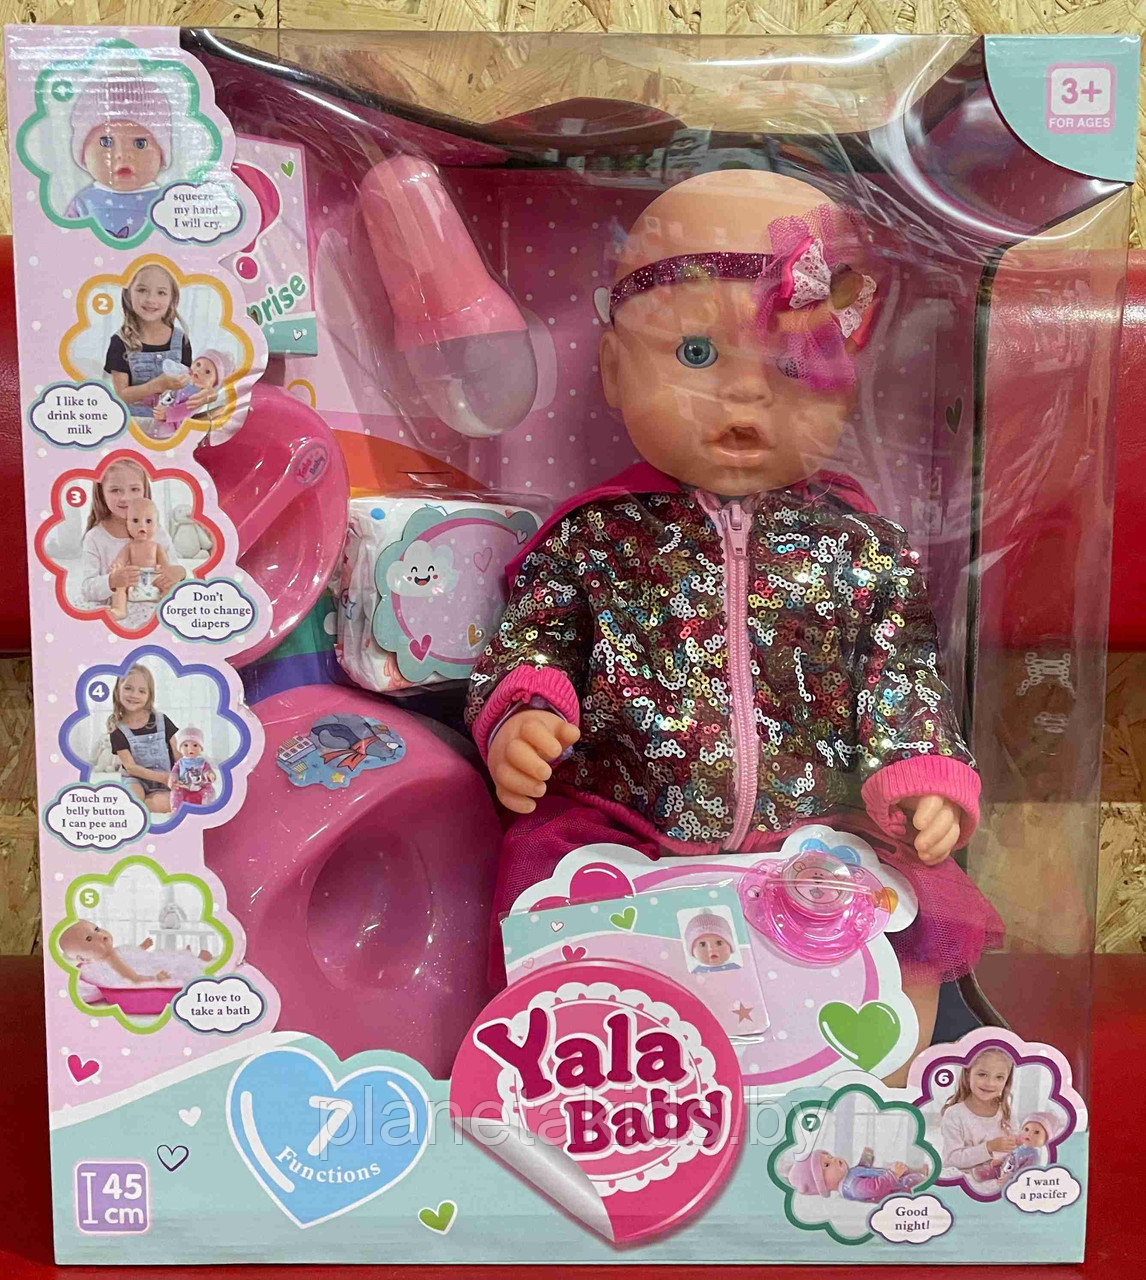 Пупс кукла  с аксессуарами, аналог Баби Борн, Baby Born, арт. YL2010B